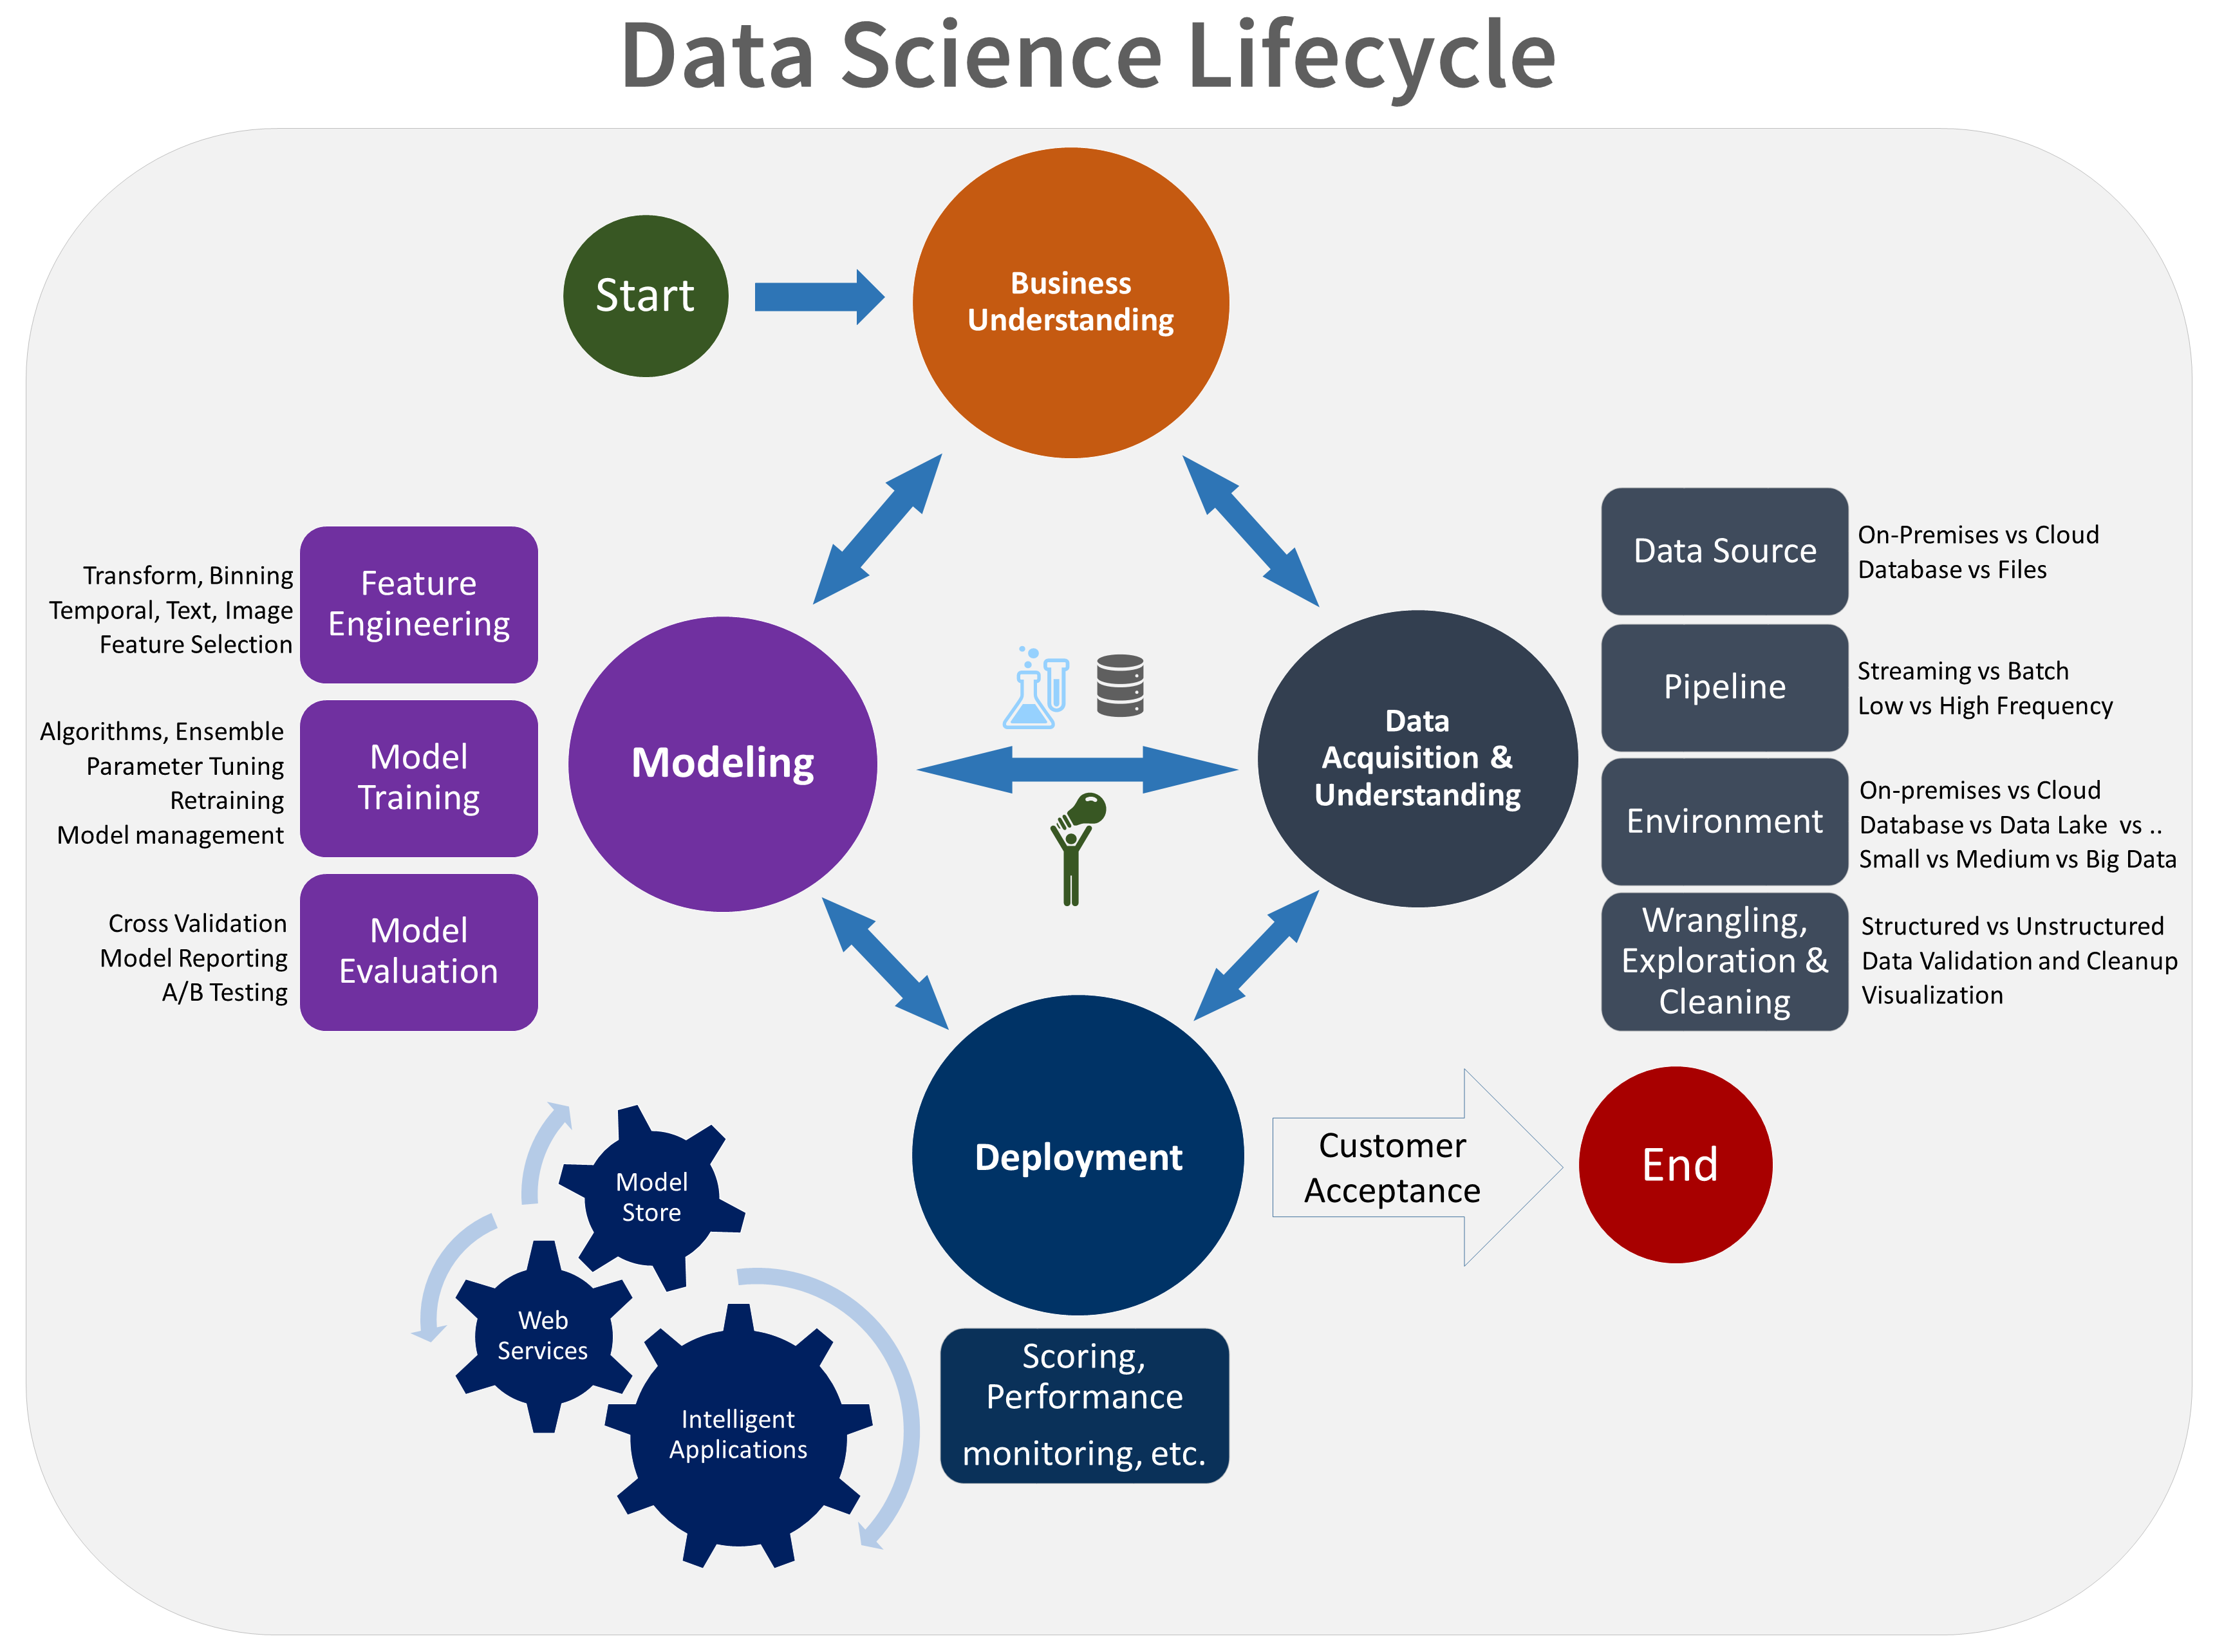 O diagrama mostra o ciclo de vida da ciência de dados, incluindo compreensão empresarial, aquisição/compreensão de dados, modelação e implementação.